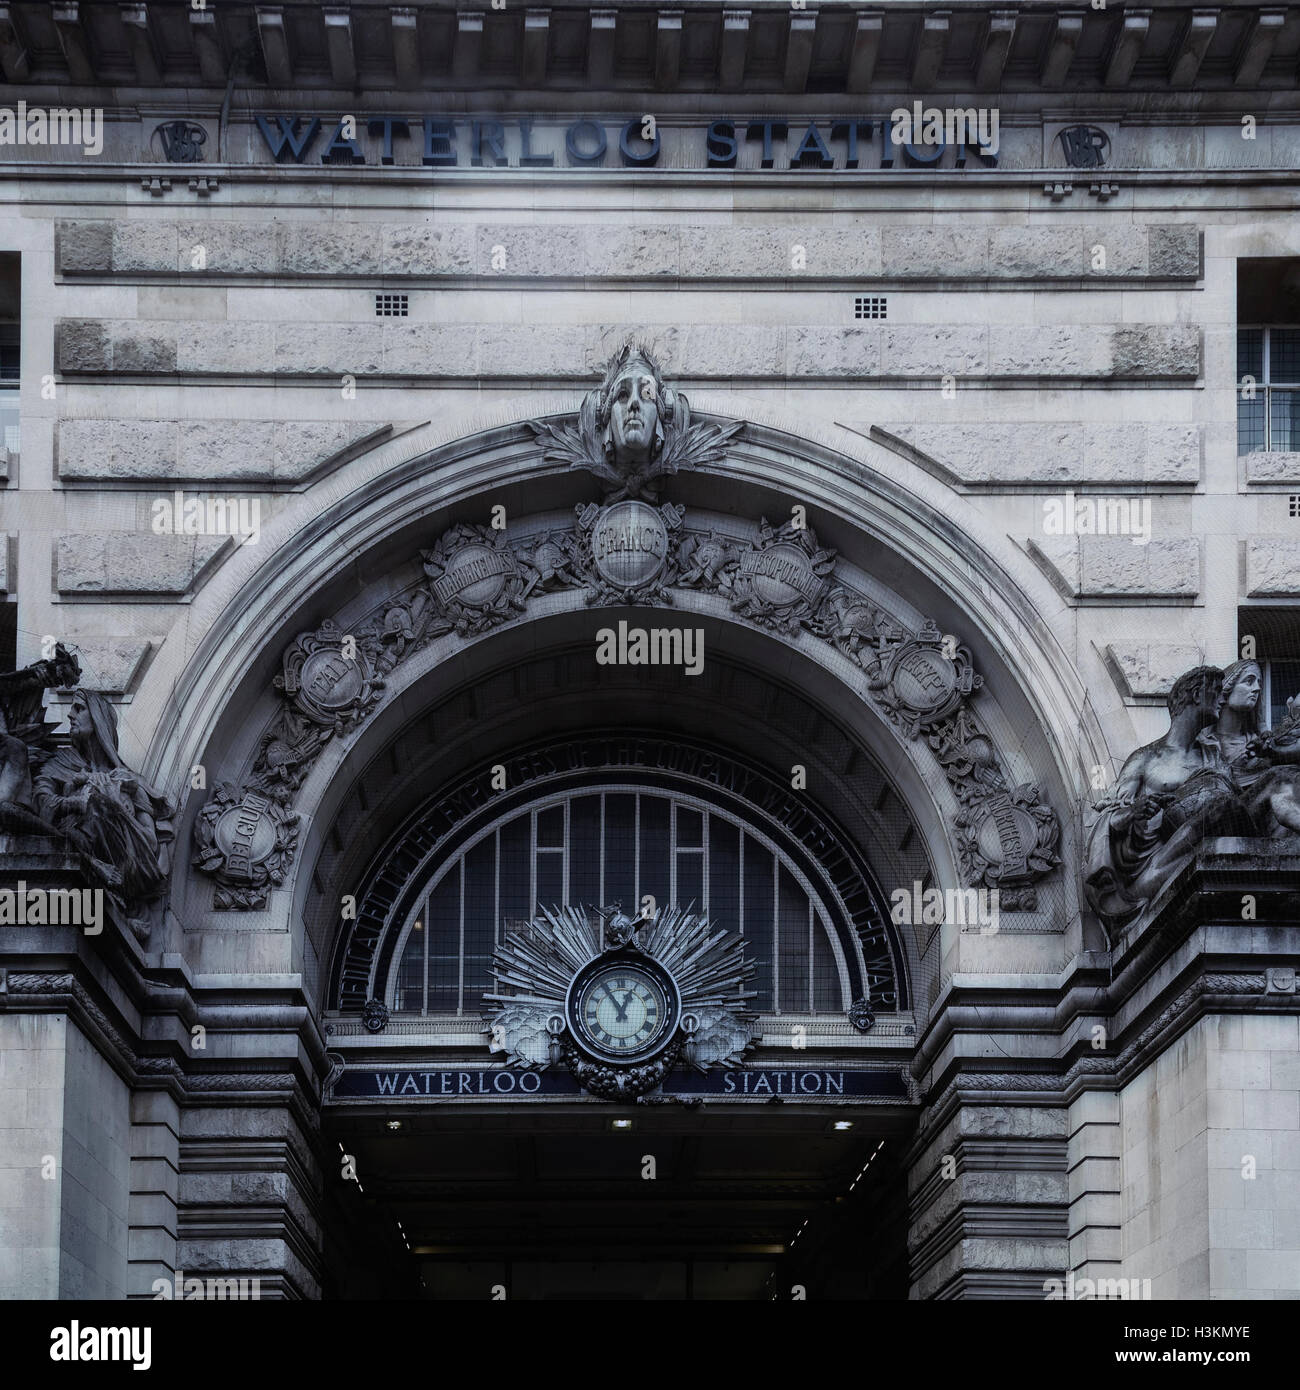 Victory Arch, entrée principale de la gare de Waterloo à Londres Angleterre Royaume-Uni Royaume-Uni Banque D'Images